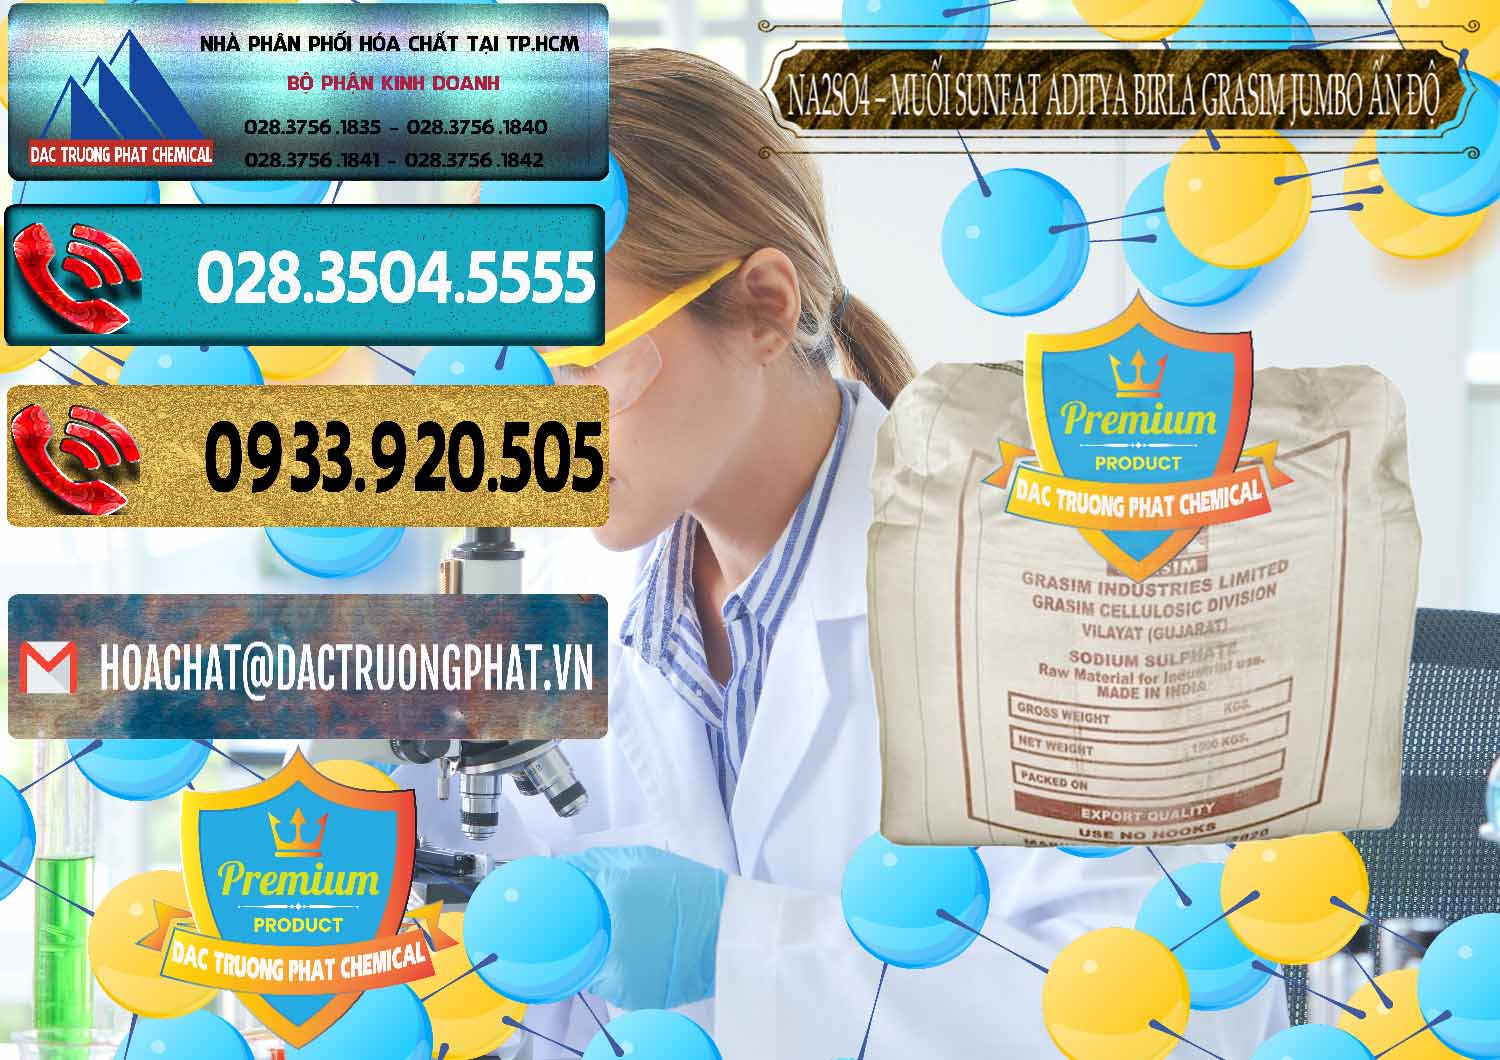 Kinh doanh - bán Sodium Sulphate - Muối Sunfat Na2SO4 Jumbo Bành Aditya Birla Grasim Ấn Độ India - 0357 - Đơn vị cung cấp và kinh doanh hóa chất tại TP.HCM - hoachatdetnhuom.com